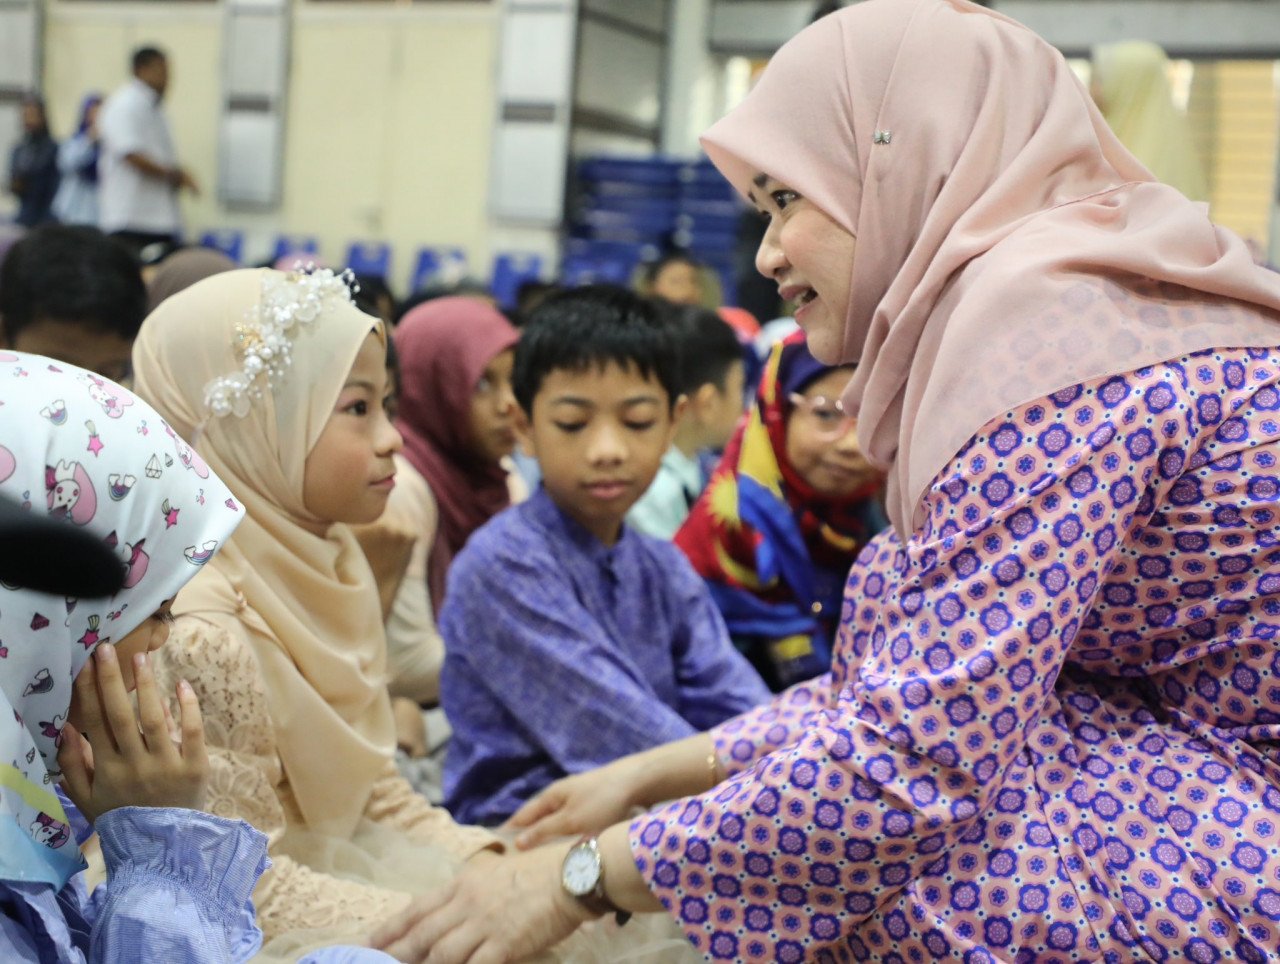 Menteri Pendidikan, Fahdlina Sidek ketika sambutan Hari Kanak-kanak peringkat sekolah di SK Putrajaya Presint 11 (1) pada 21 November. - gambar media sosial Fadhlina Sidek